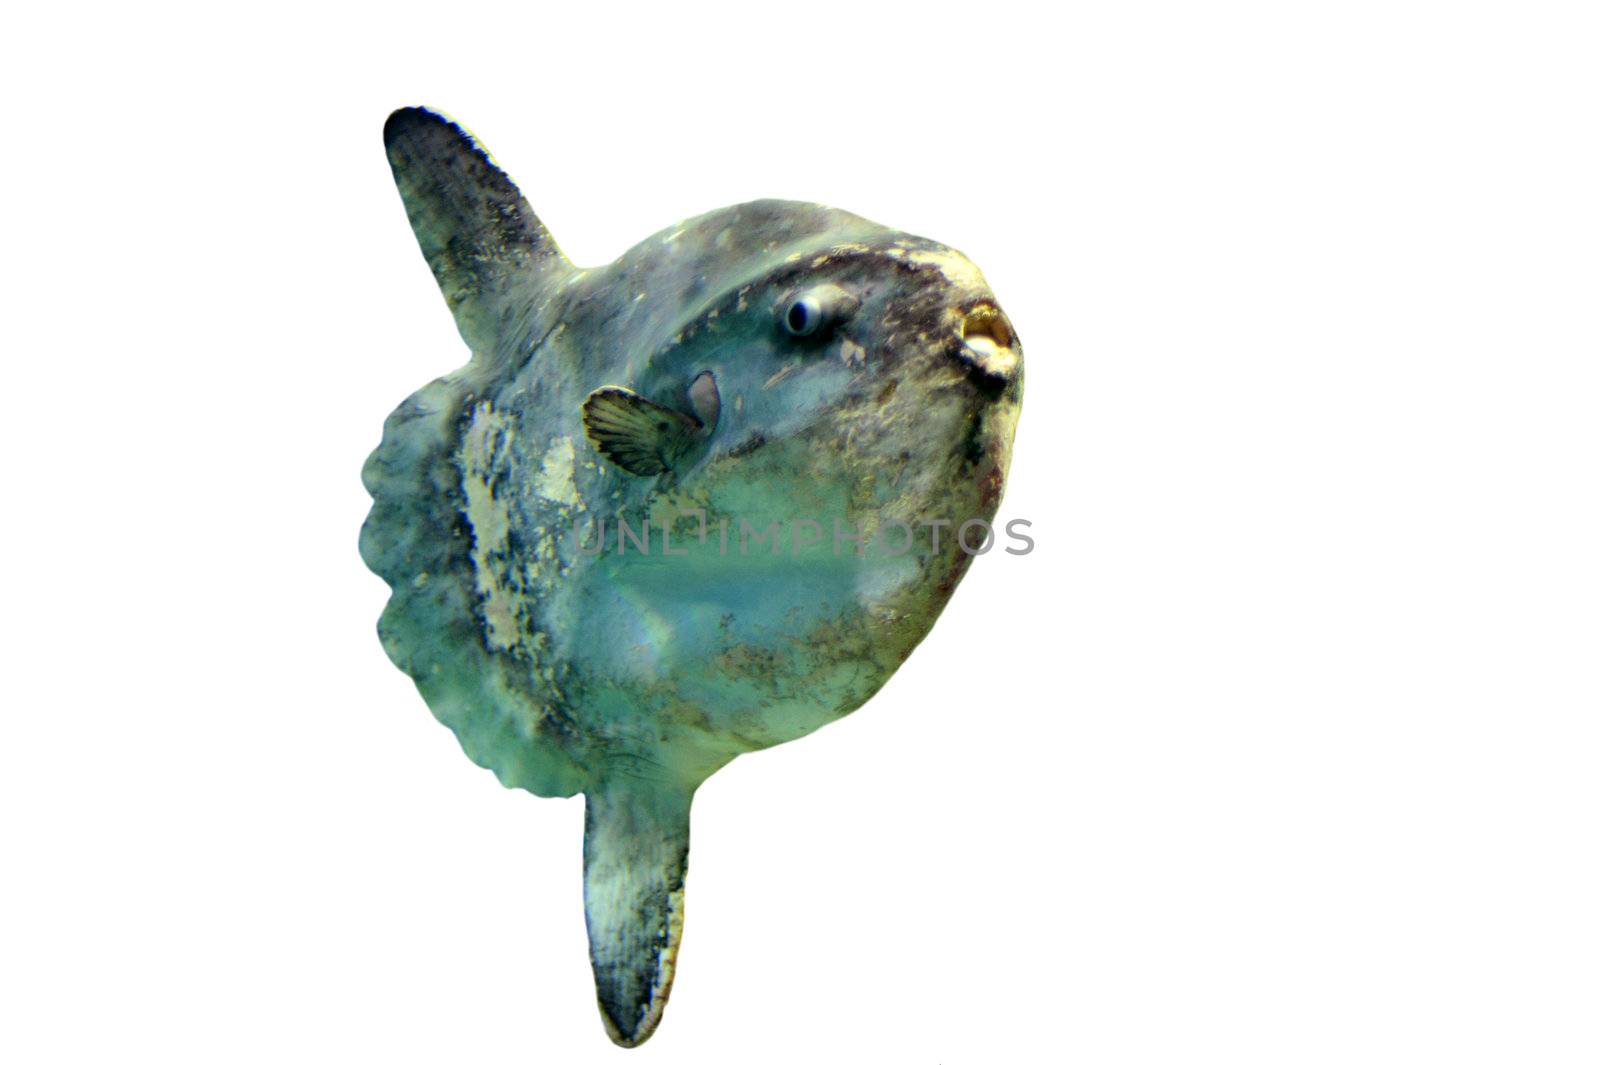 Ocean Sunfish by cynoclub